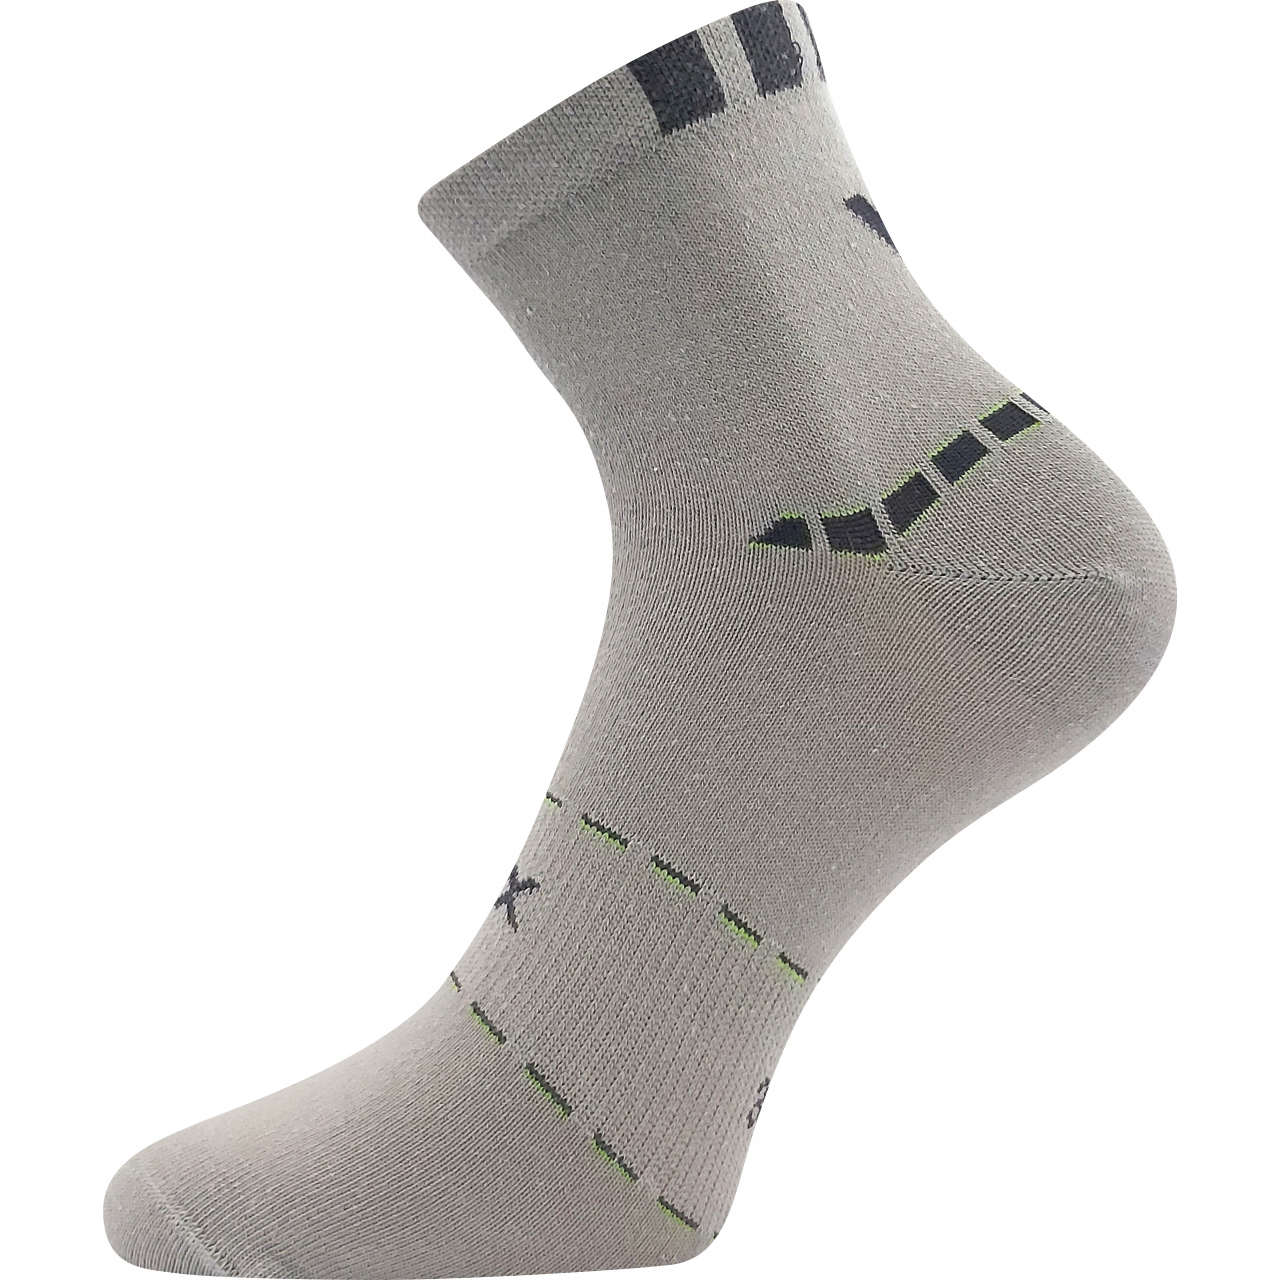 Ponožky pánské sportovní Voxx Rexon 02 - šedé, 43-46